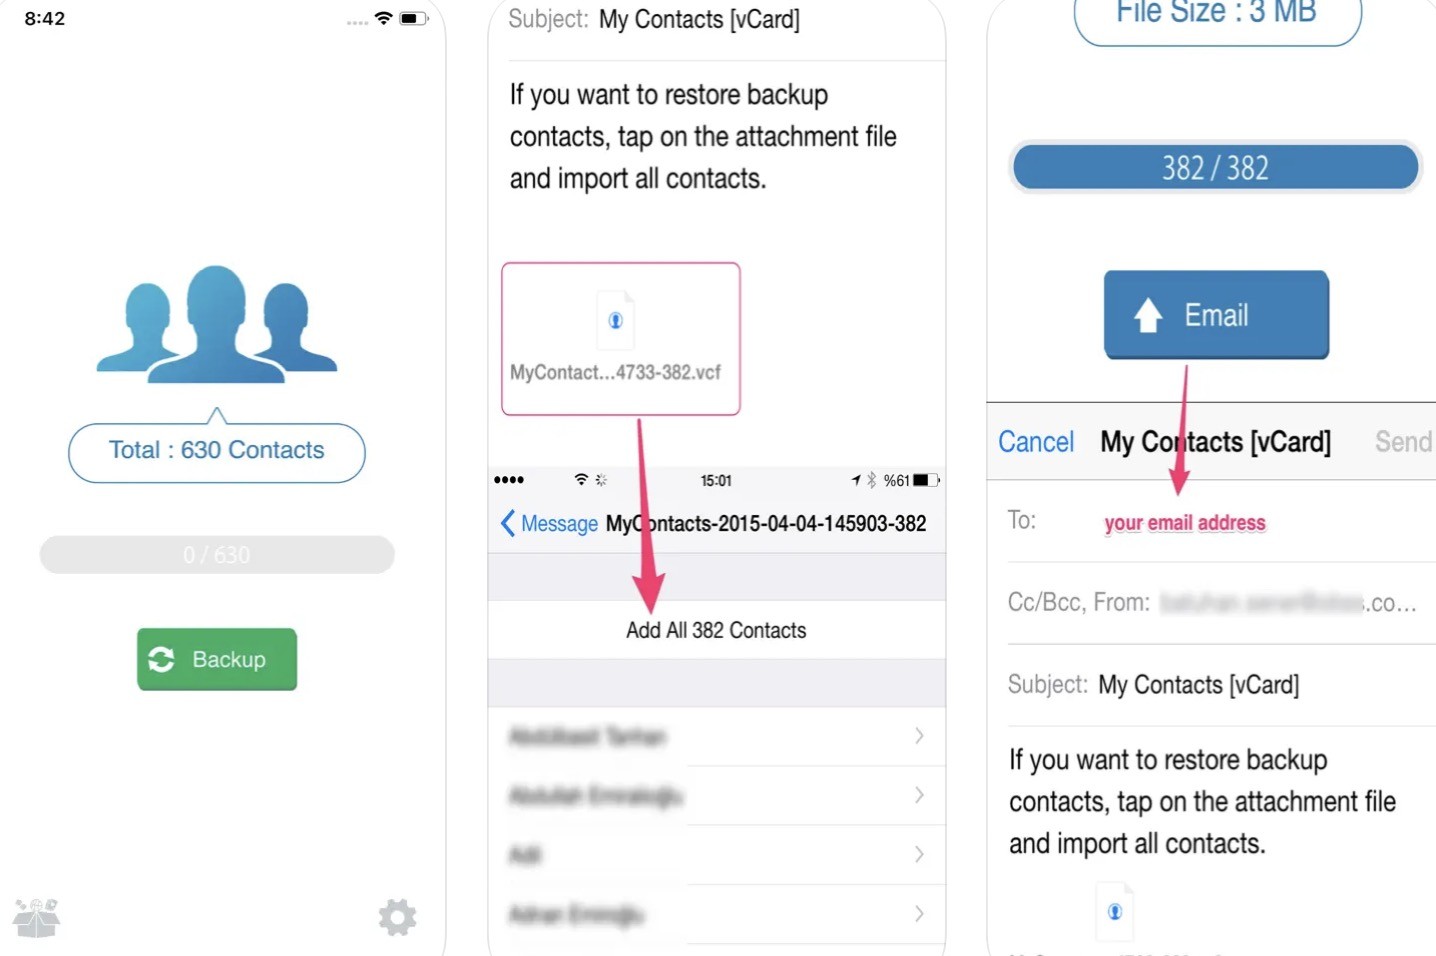 Przydatne aplikacje, które pomogą Ci zarządzać kontaktami na iPhone poradniki, gry-i-aplikacje, ciekawostki zarządzanie kontaktami, wizytówki, synchronizacja, skanowanie, My Contacts Backup, Książka adresowa, kopie zapasowe, Kopia zapasowa moich kontaktów, kontakty, iPhone, Grupy, grupowanie kontaktów, CircleBack, CamCard, aktualizacja kontaktów  W dzisiejszych czasach smartfony pełnią rolę nie tylko telefonów, ale także małych komputerów, które umożliwiają nam organizację wielu aspektów życia codziennego. k2